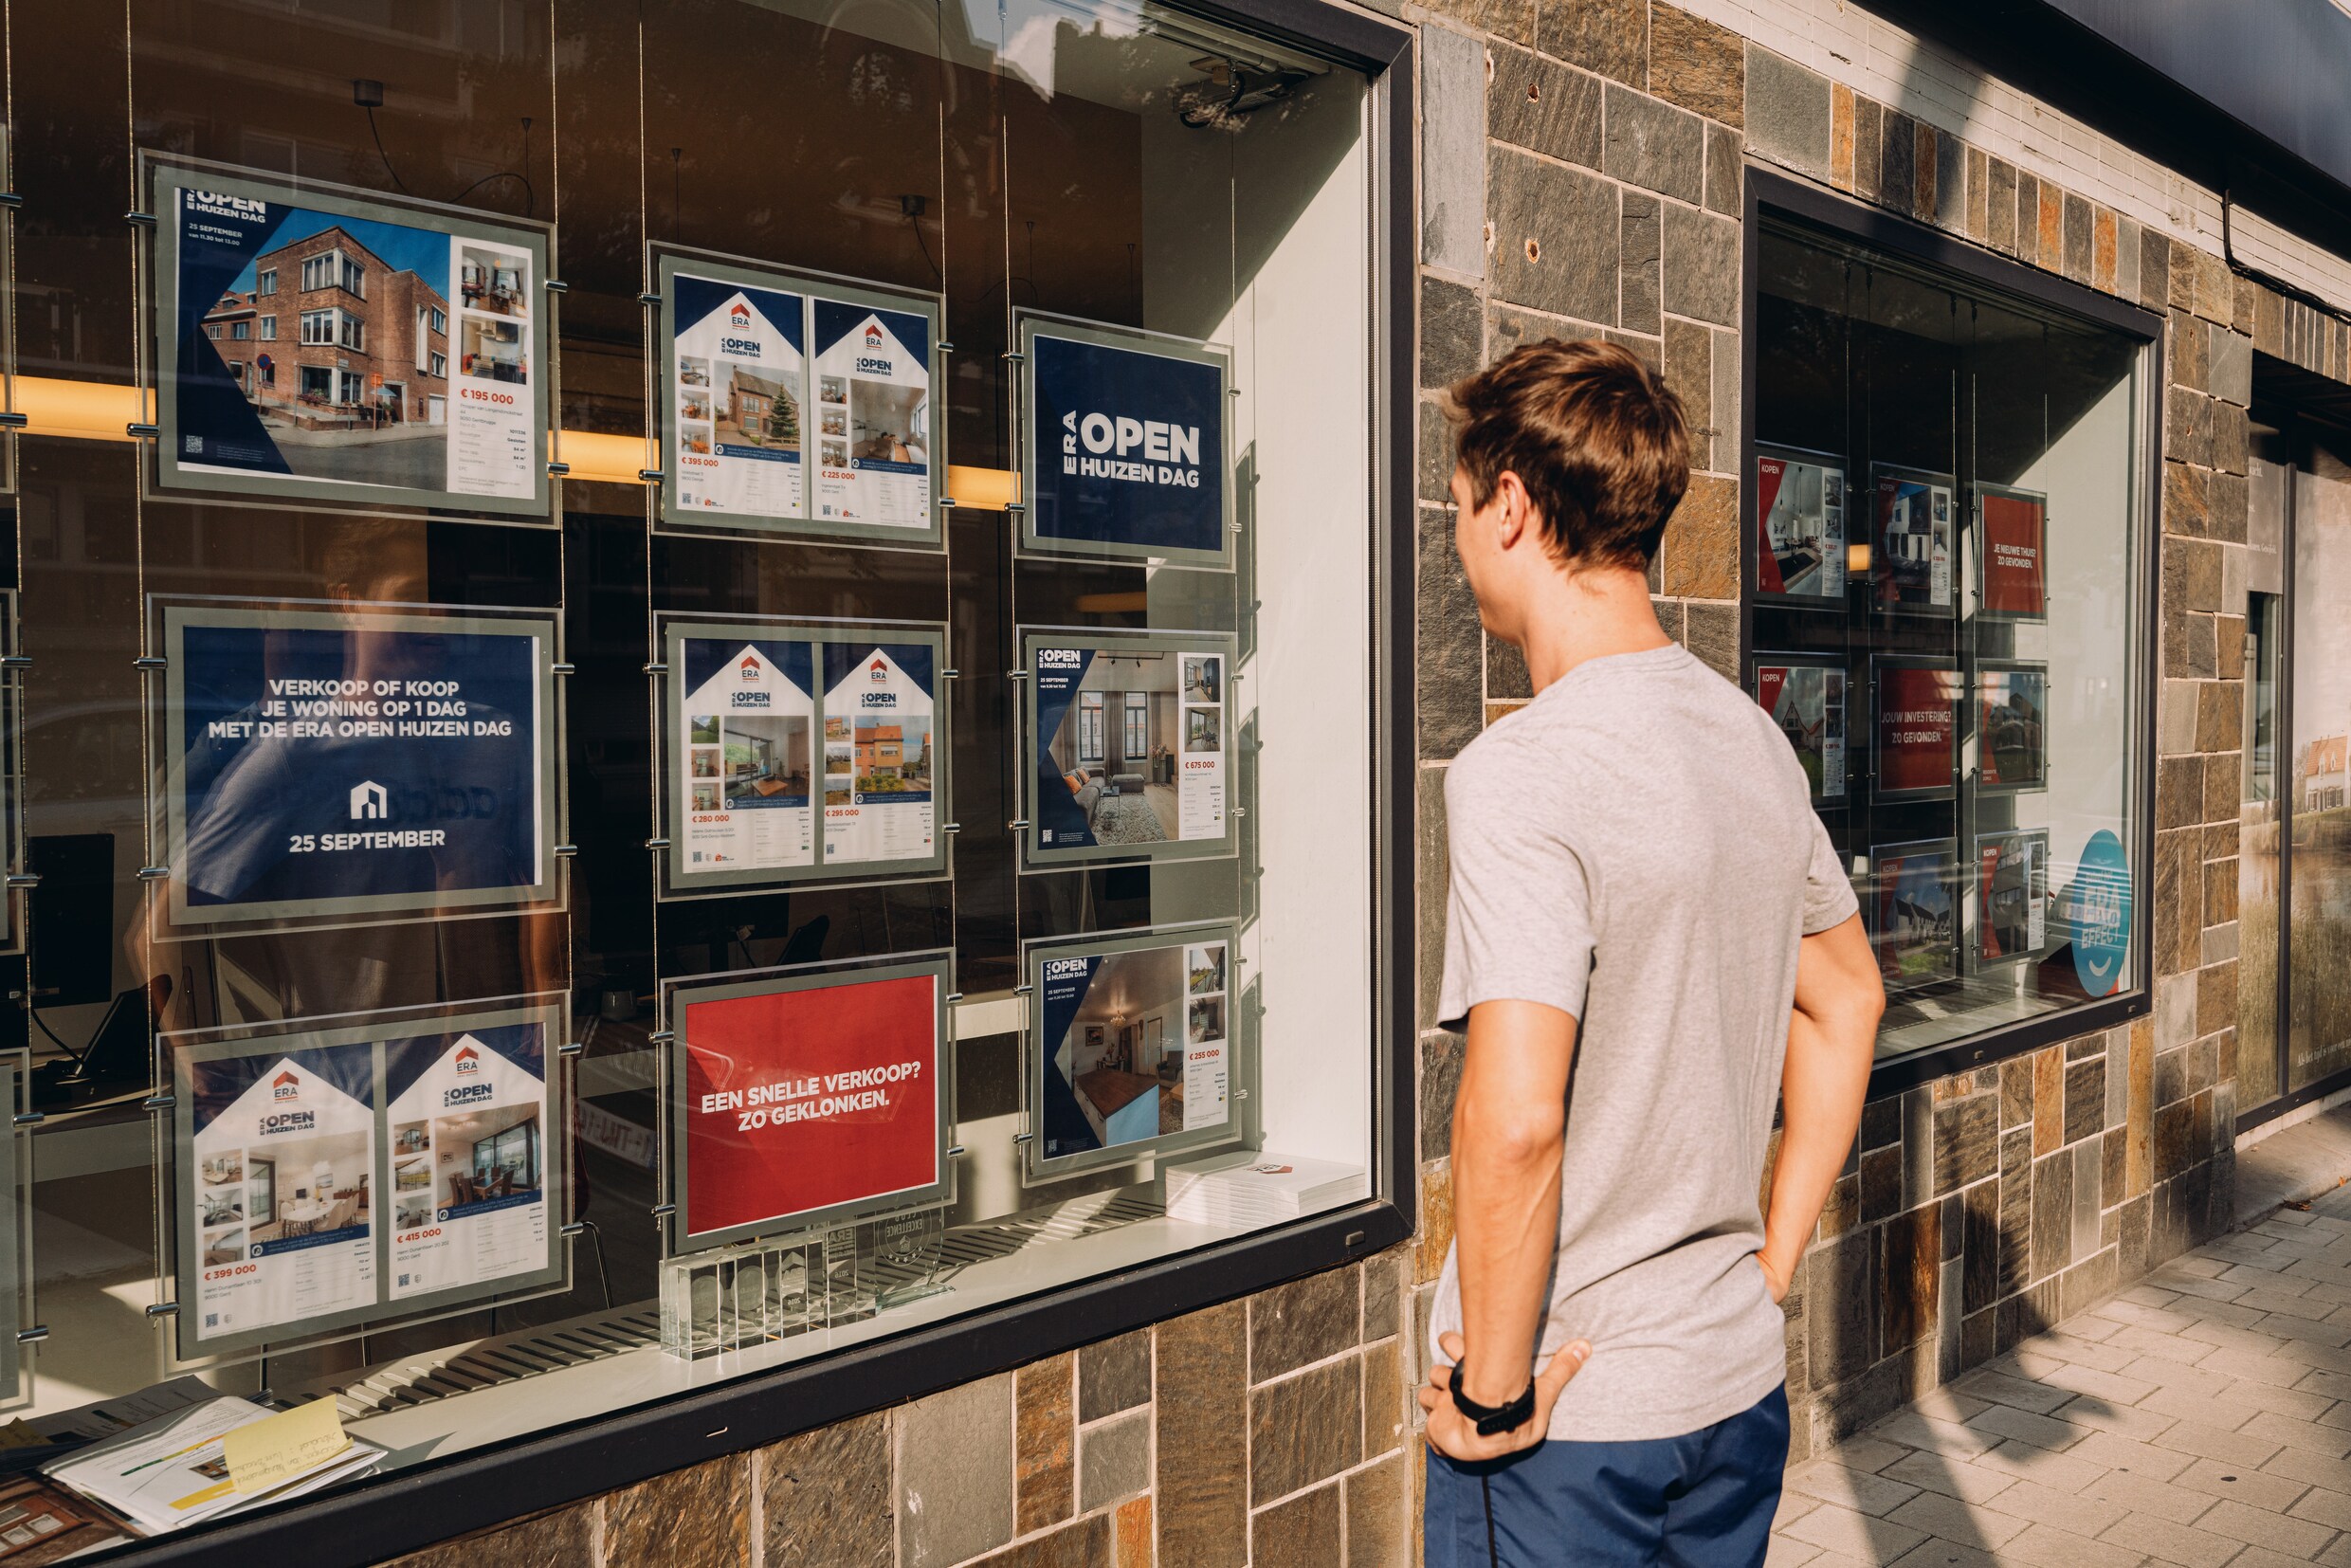 Wie een hypothecaire lening wil krijgen, zal straks zijn woning moeten laten schatten: wat vindt u van deze nieuwe regeling?